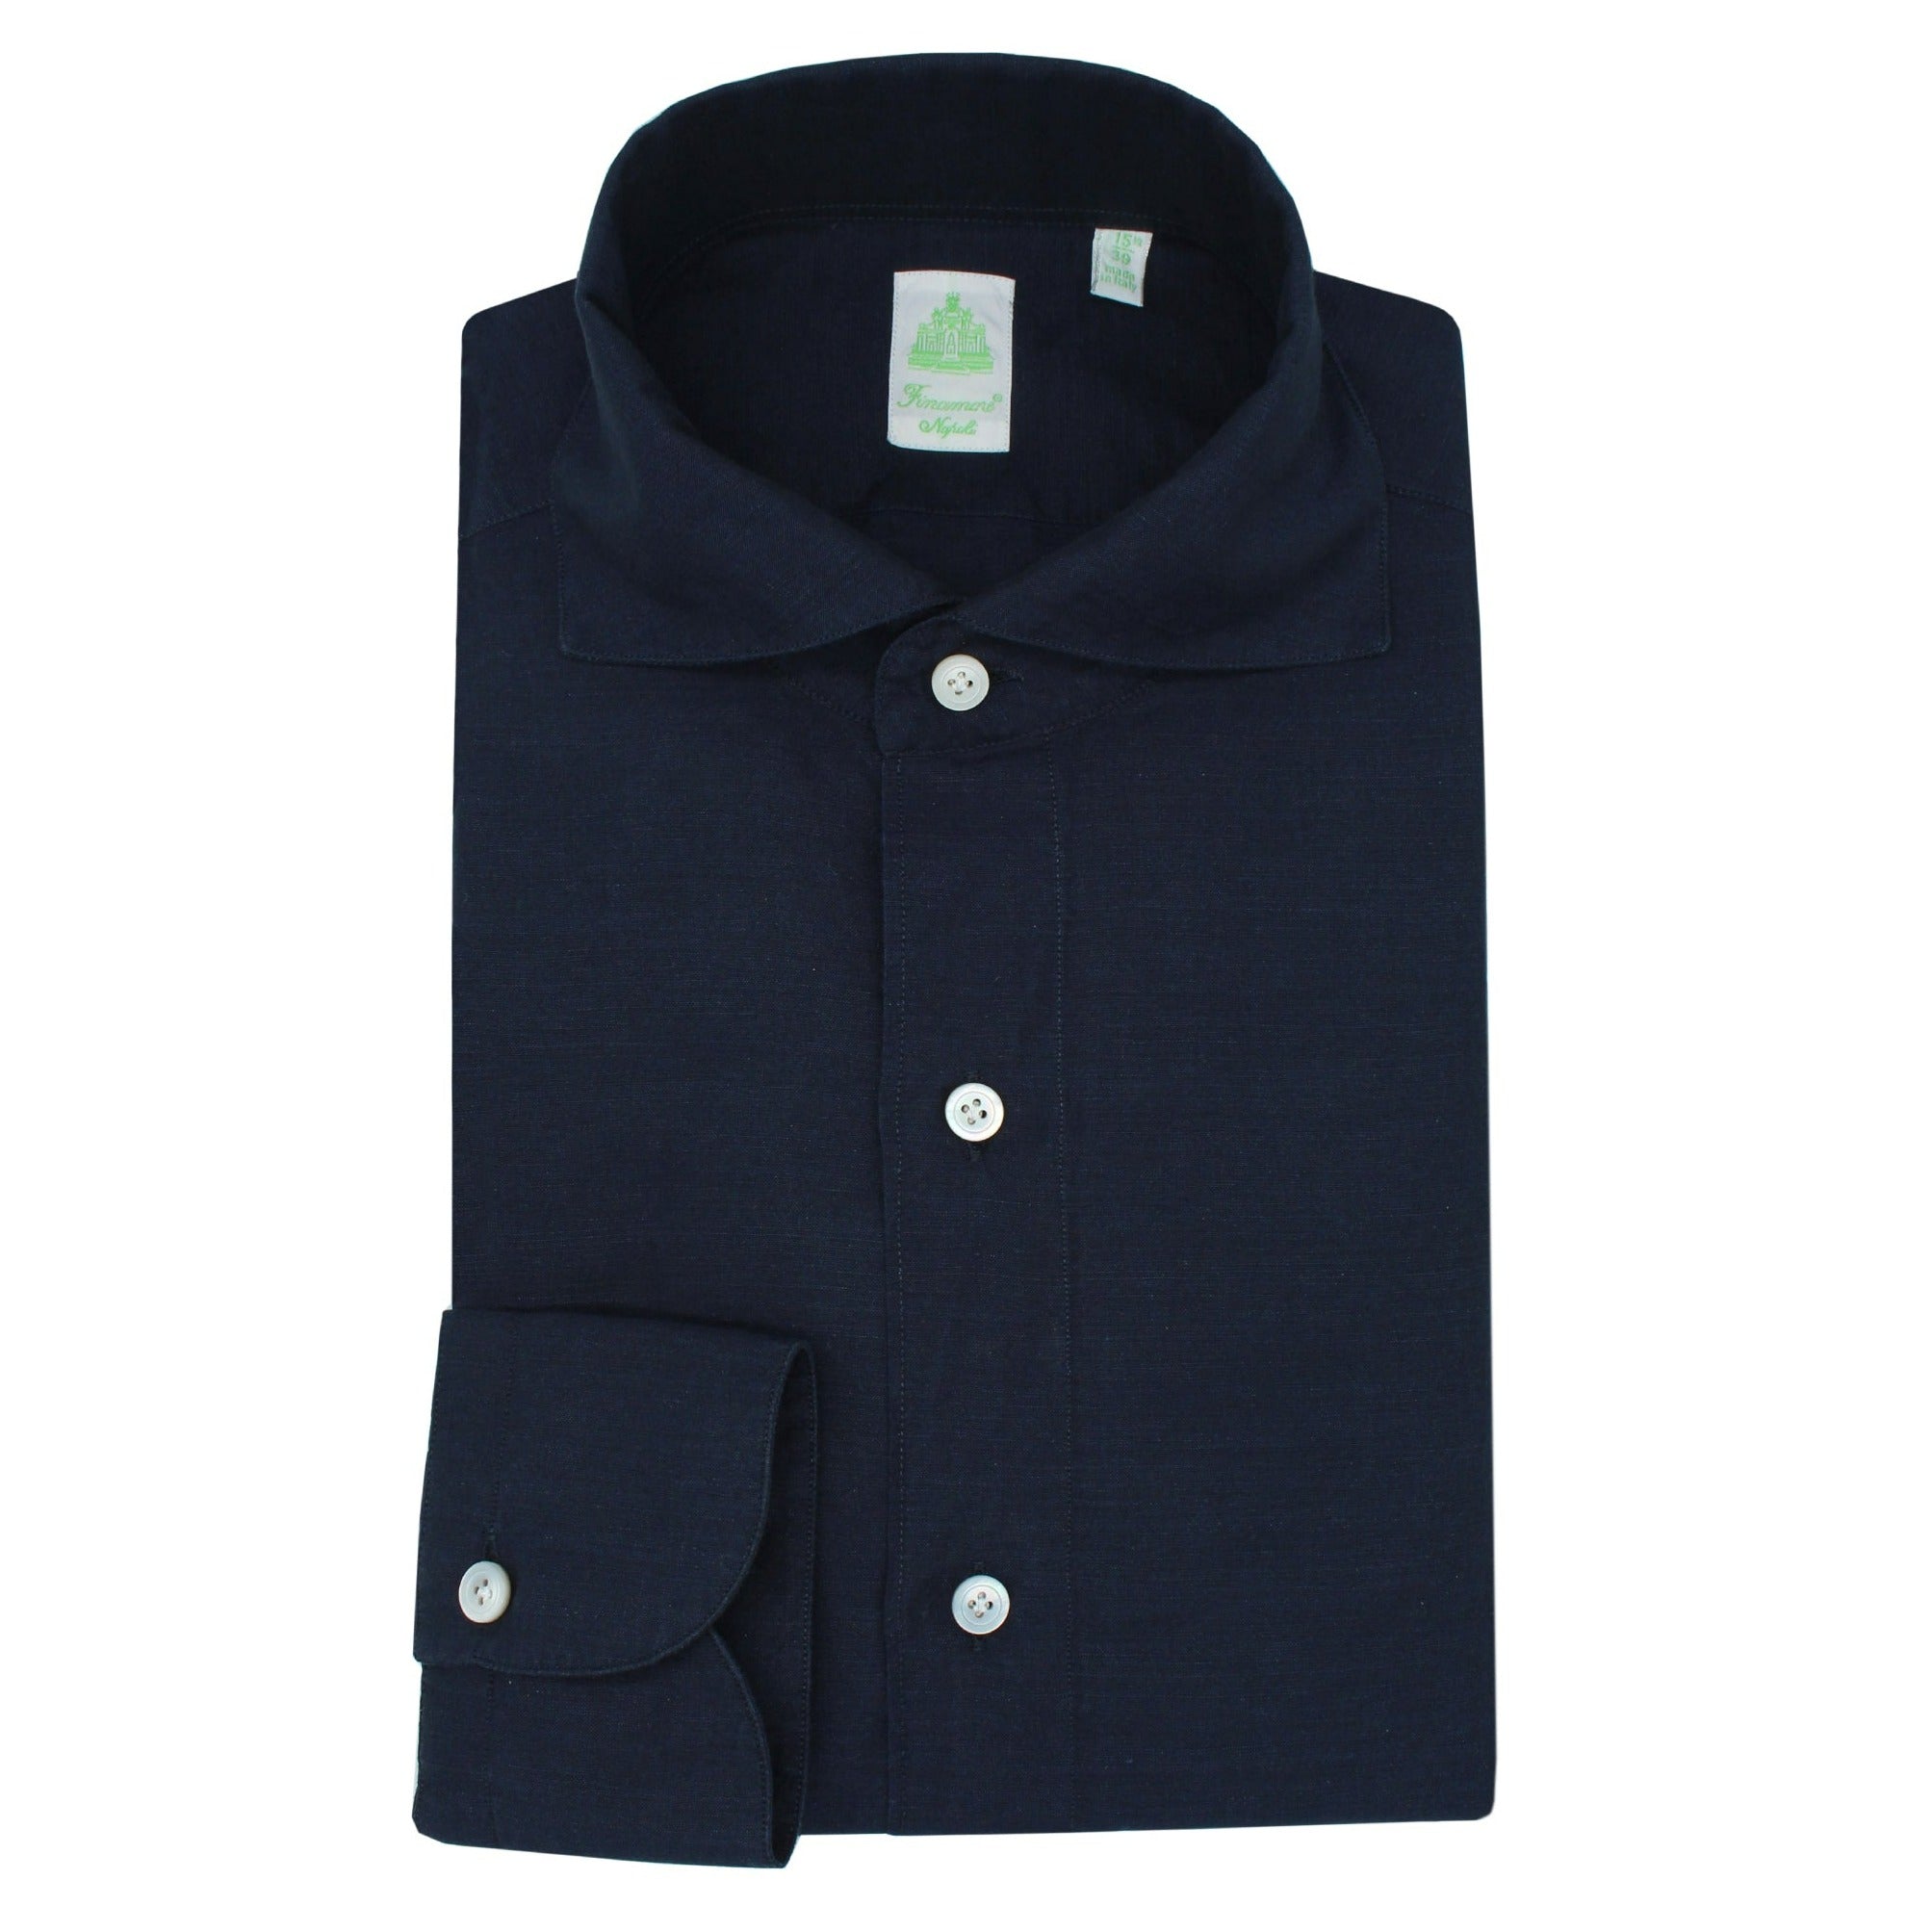 Tokyo linen cotton blue soft collar slim shirt